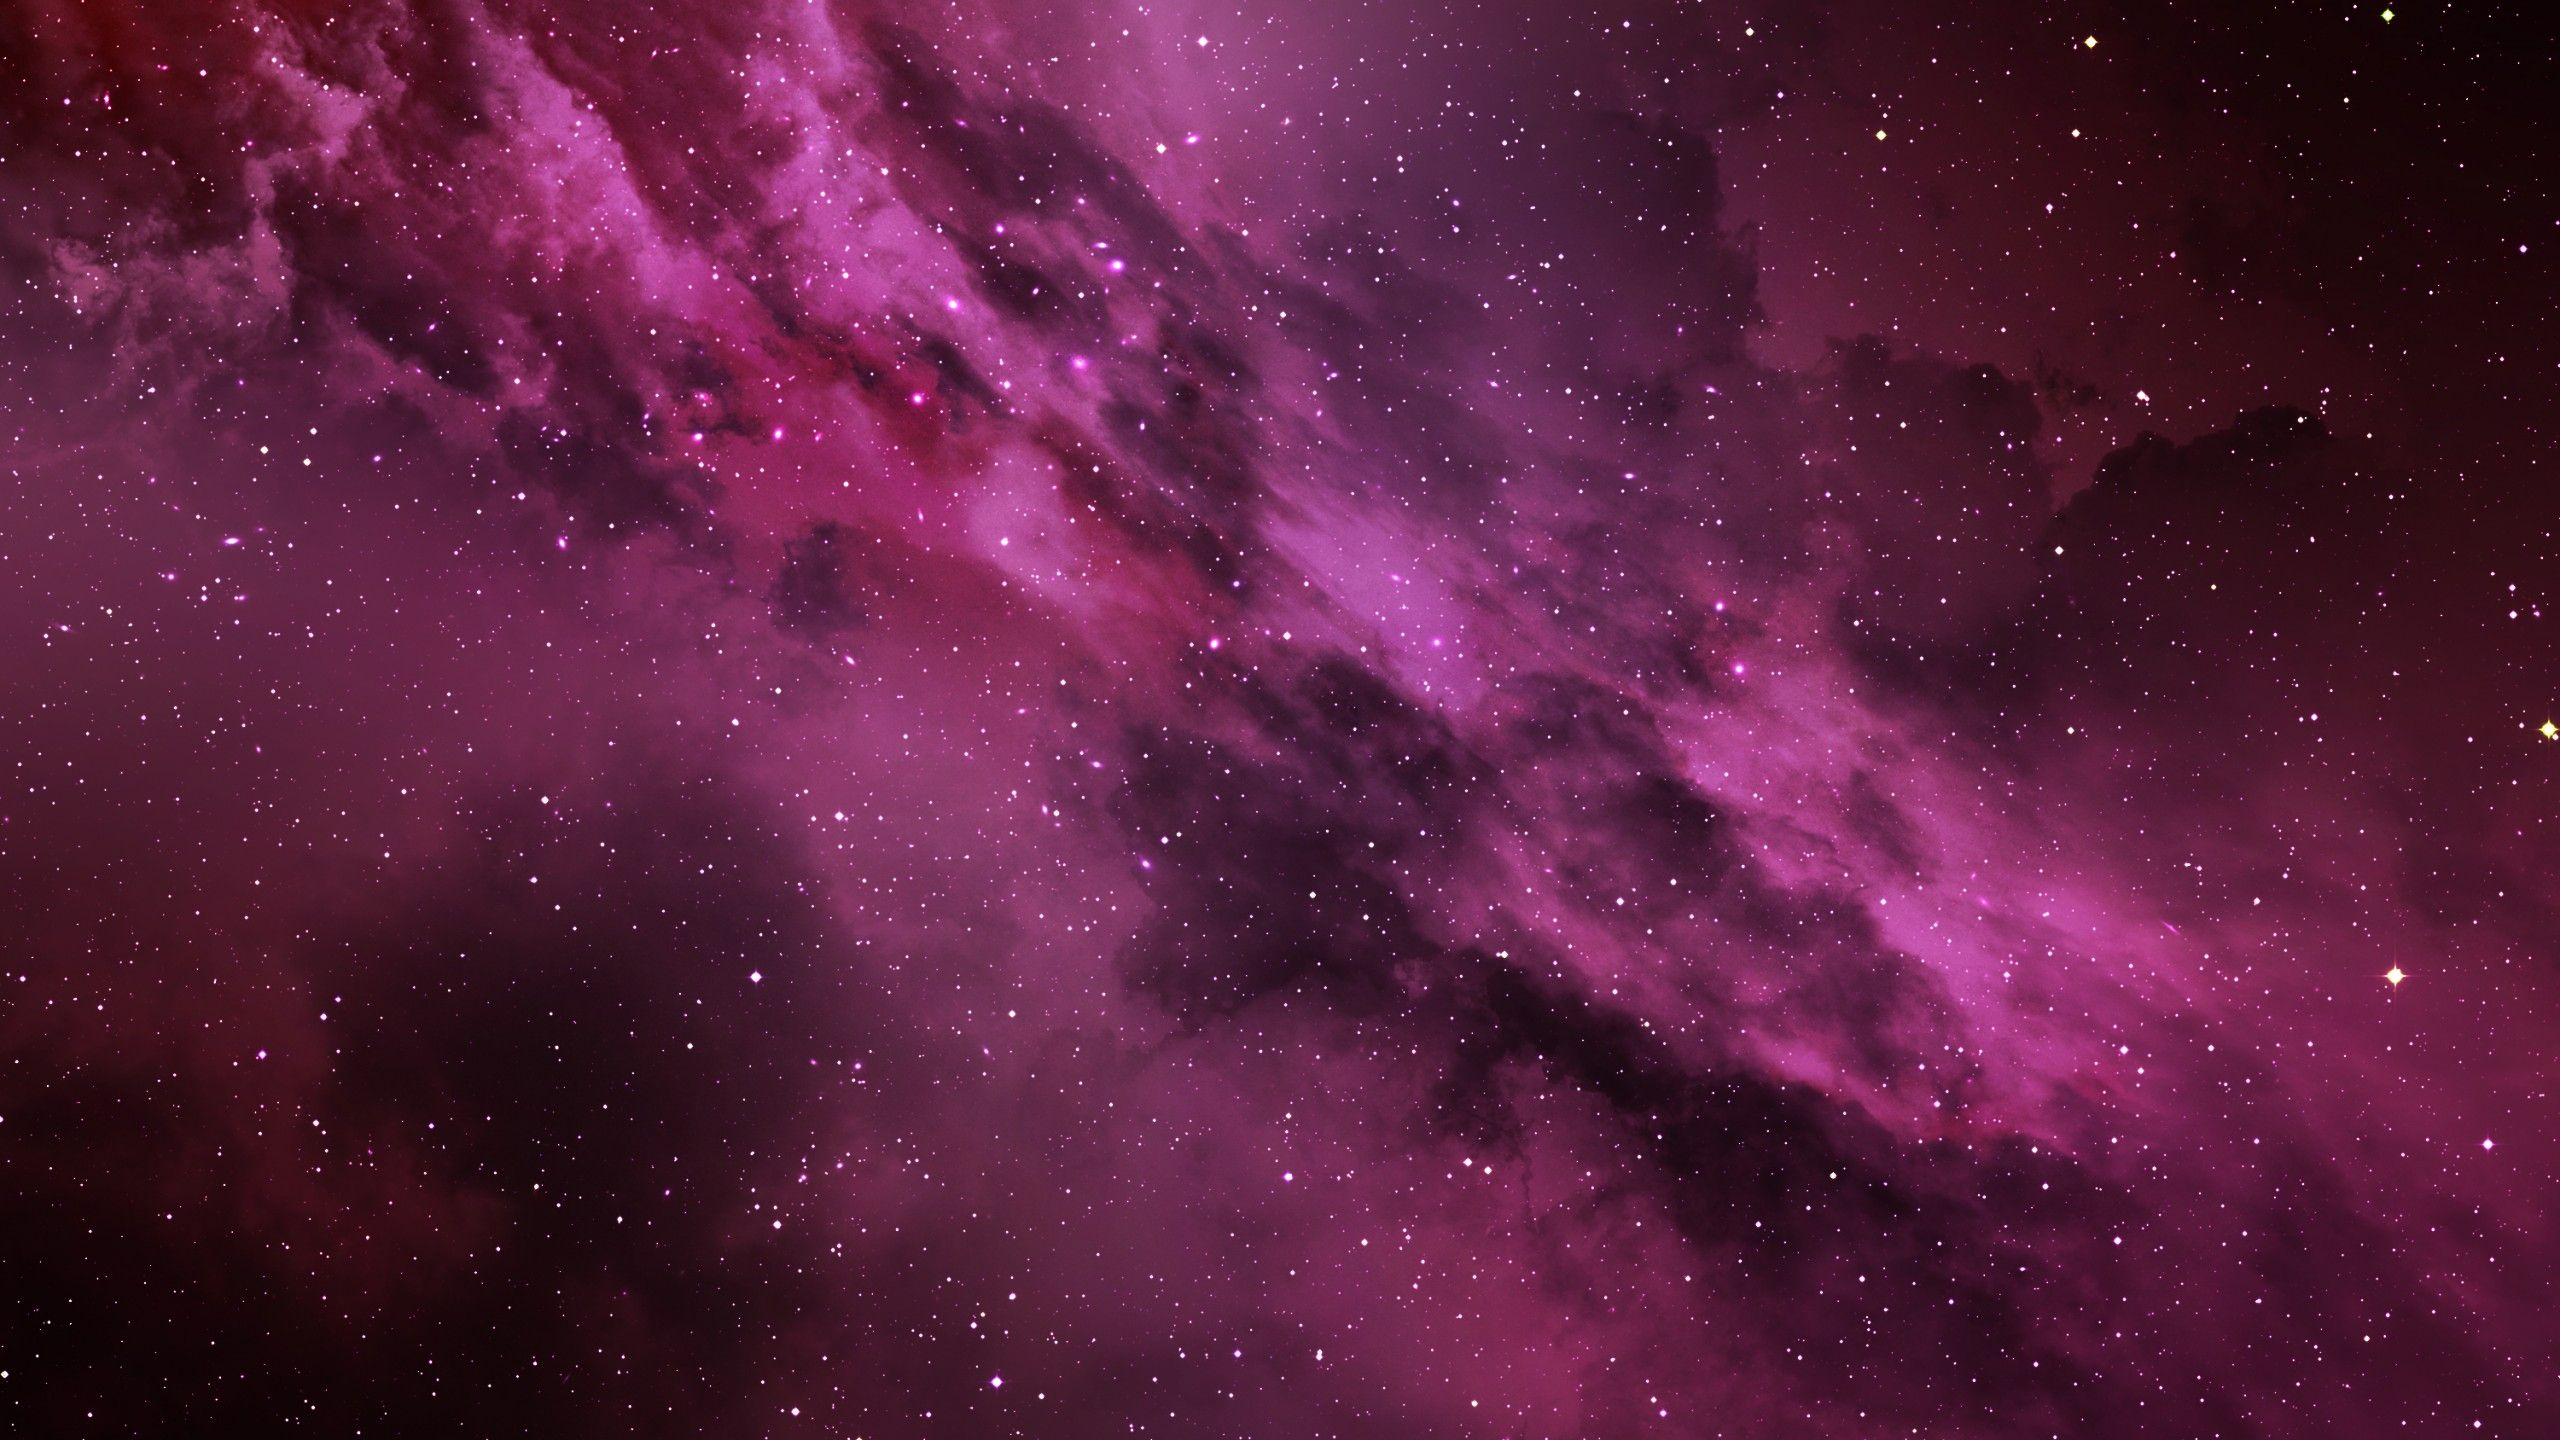 Hình nền hồng galaxy trên WallpaperDog: Bộ sưu tập hình nền hồng galaxy trên WallpaperDog là tuyệt phẩm được nhiều người yêu thích và lựa chọn cho thiết bị của mình. Với các phong cách đa dạng và tùy chọn màu sắc đầy sáng tạo, bộ sưu tập này đem lại cho bạn sự lựa chọn tuyệt vời cho màn hình của mình. Hãy truy cập vào WallpaperDog ngay bây giờ để khám phá những bức hình nền hồng galaxy đẹp nhất.